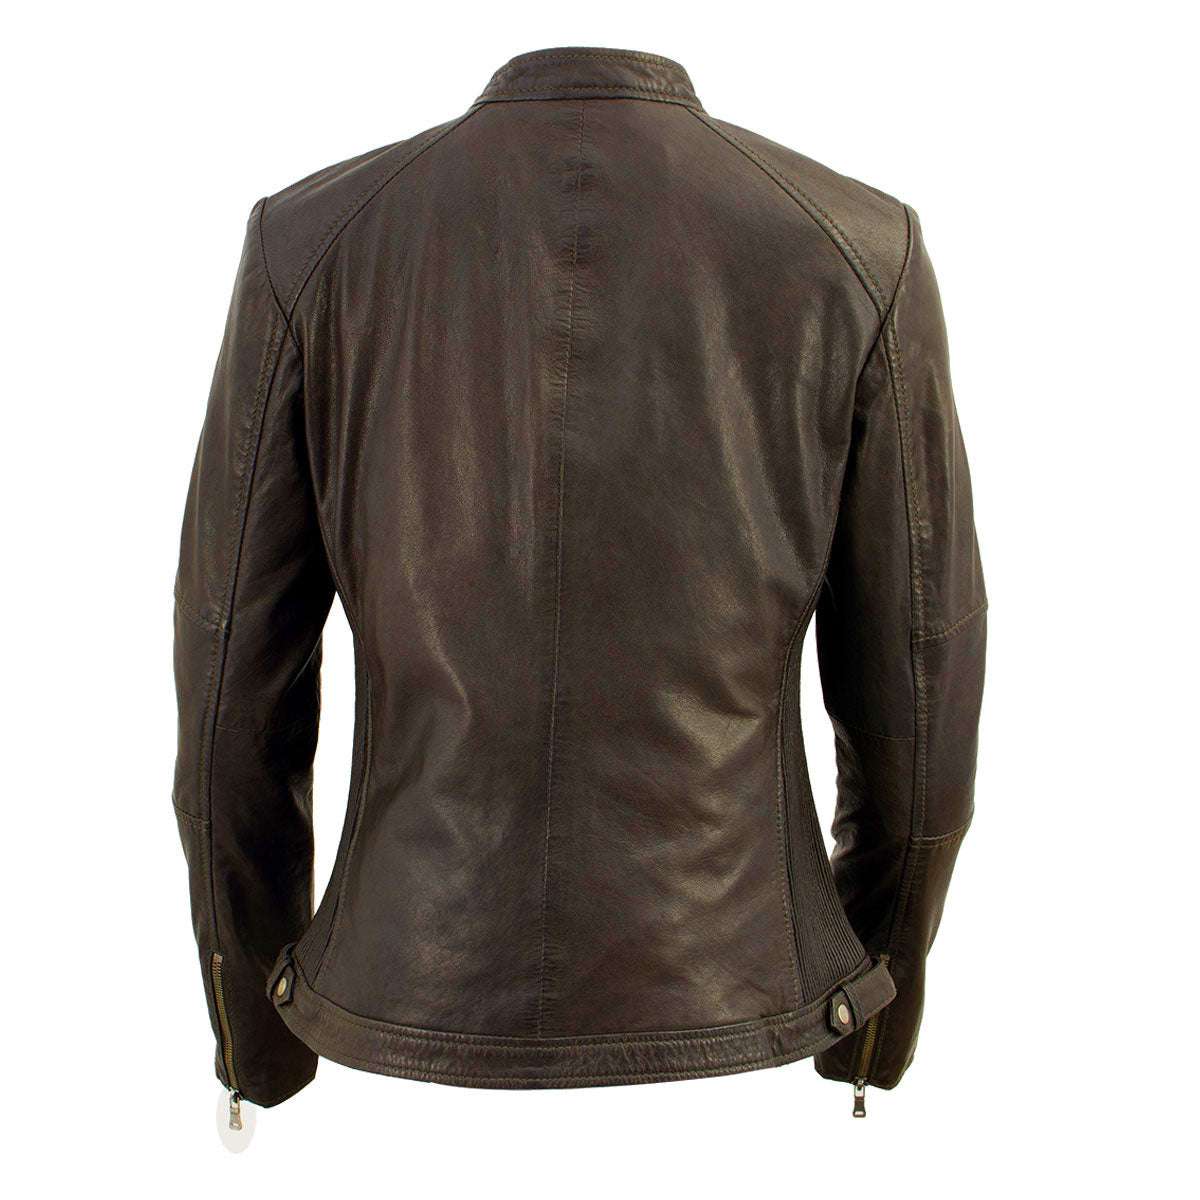 Milwaukee Leather Vintage SFL2813 Women's Brown Leather Moto Style Fashion Jacket